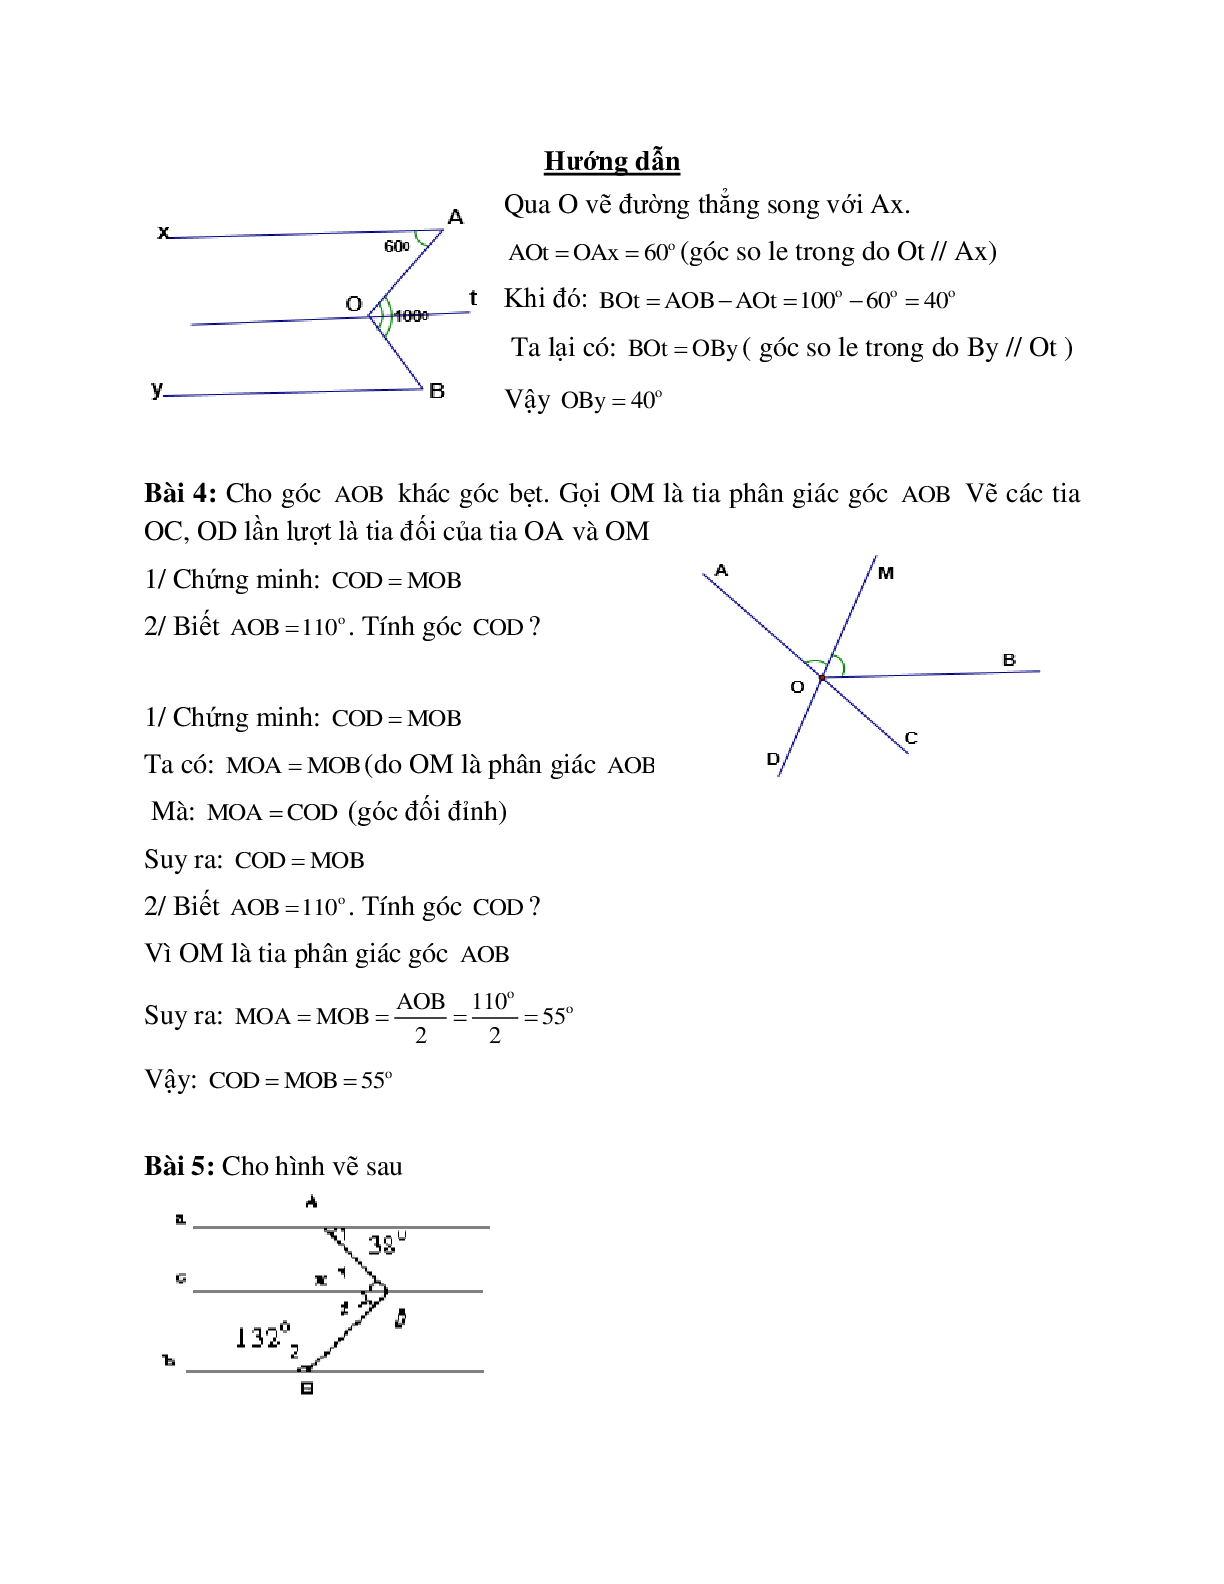 Hệ thống bài tập về Tiên đề Ơ-clit - Từ vuông góc đến song song có lời giải (trang 3)